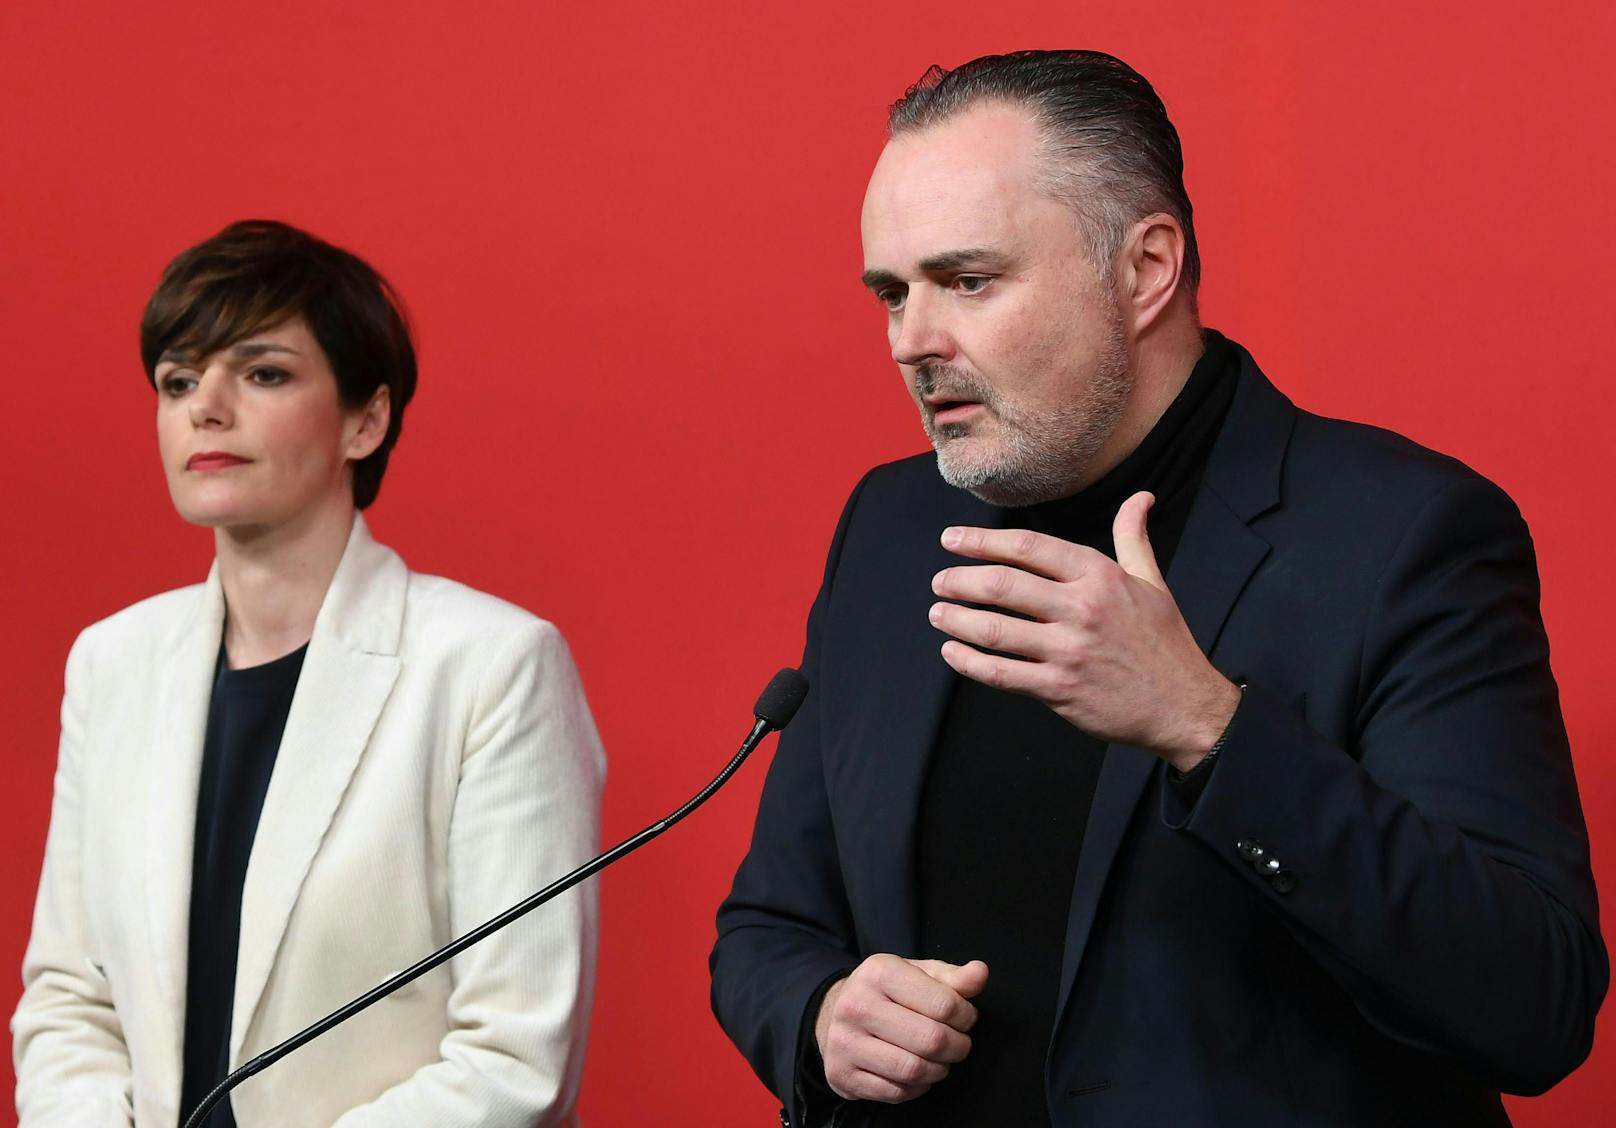 Es folgten erste Diskussionen um einen möglichen Wechsel an der Parteispitze. Burgenlands Landeshauptmann Doskozil galt als einer der größten Kritiker.